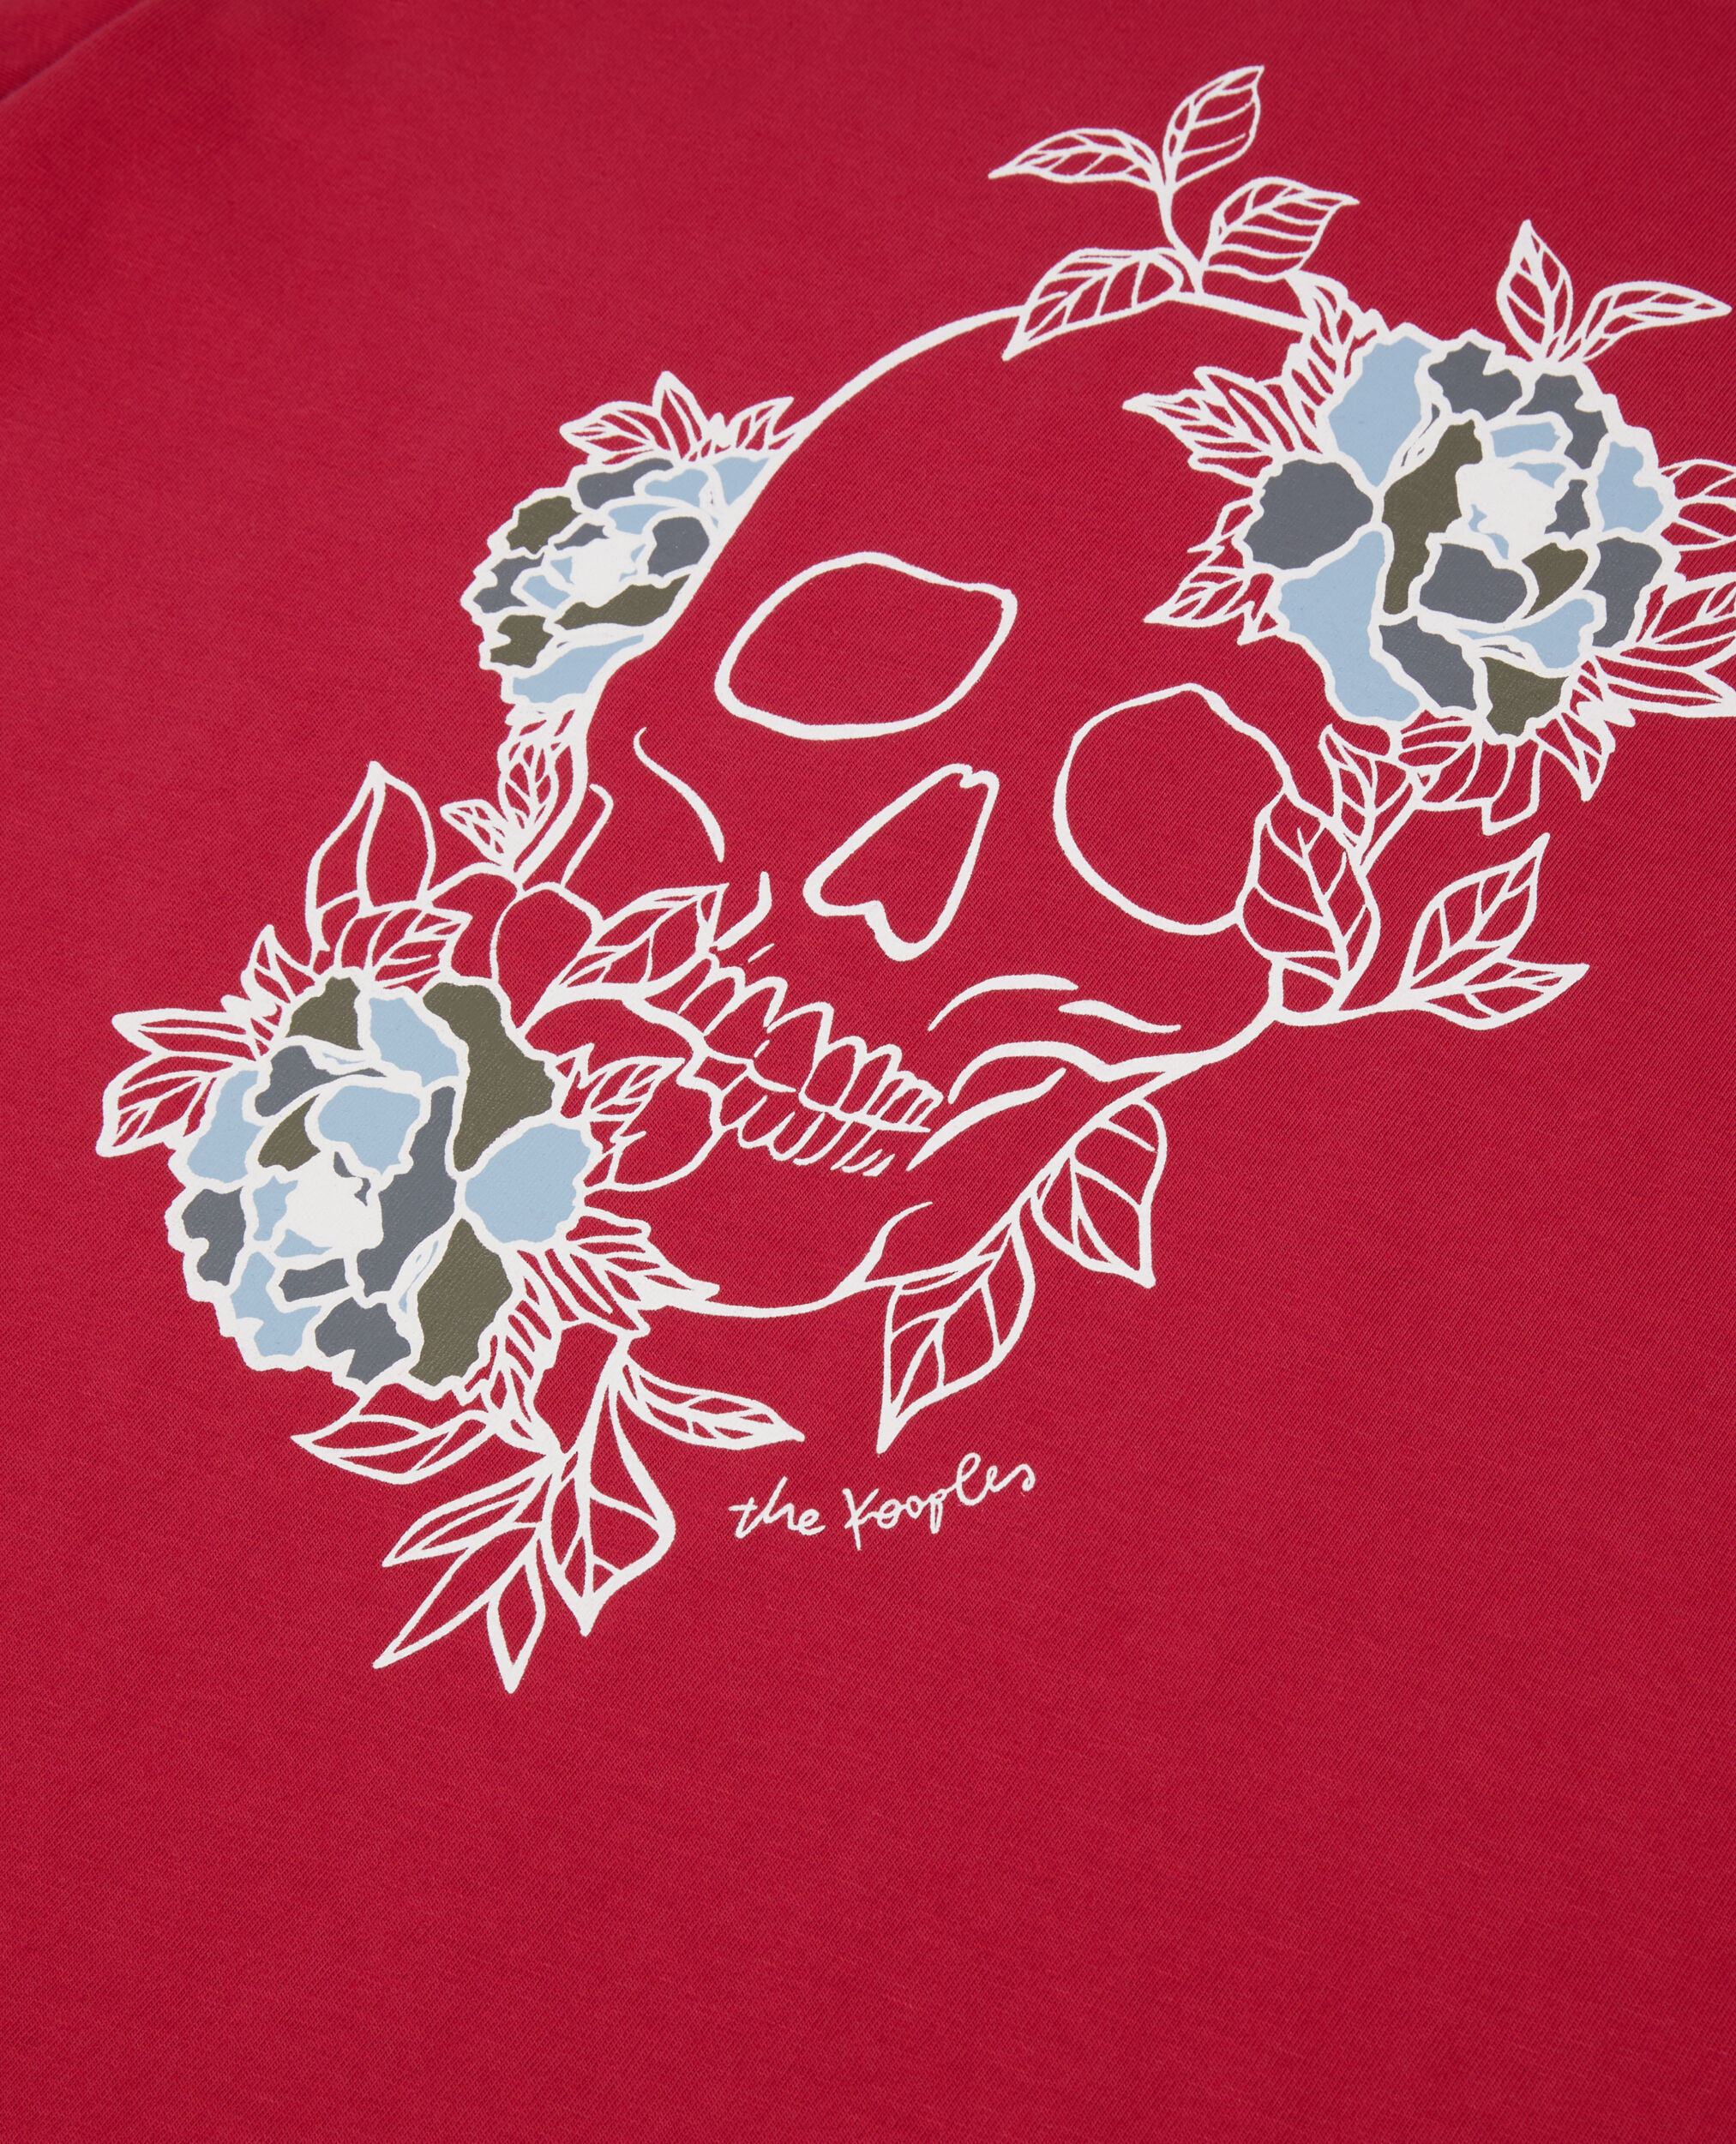 Camiseta hombre roja serigrafía Flower skull, CHERRY, hi-res image number null